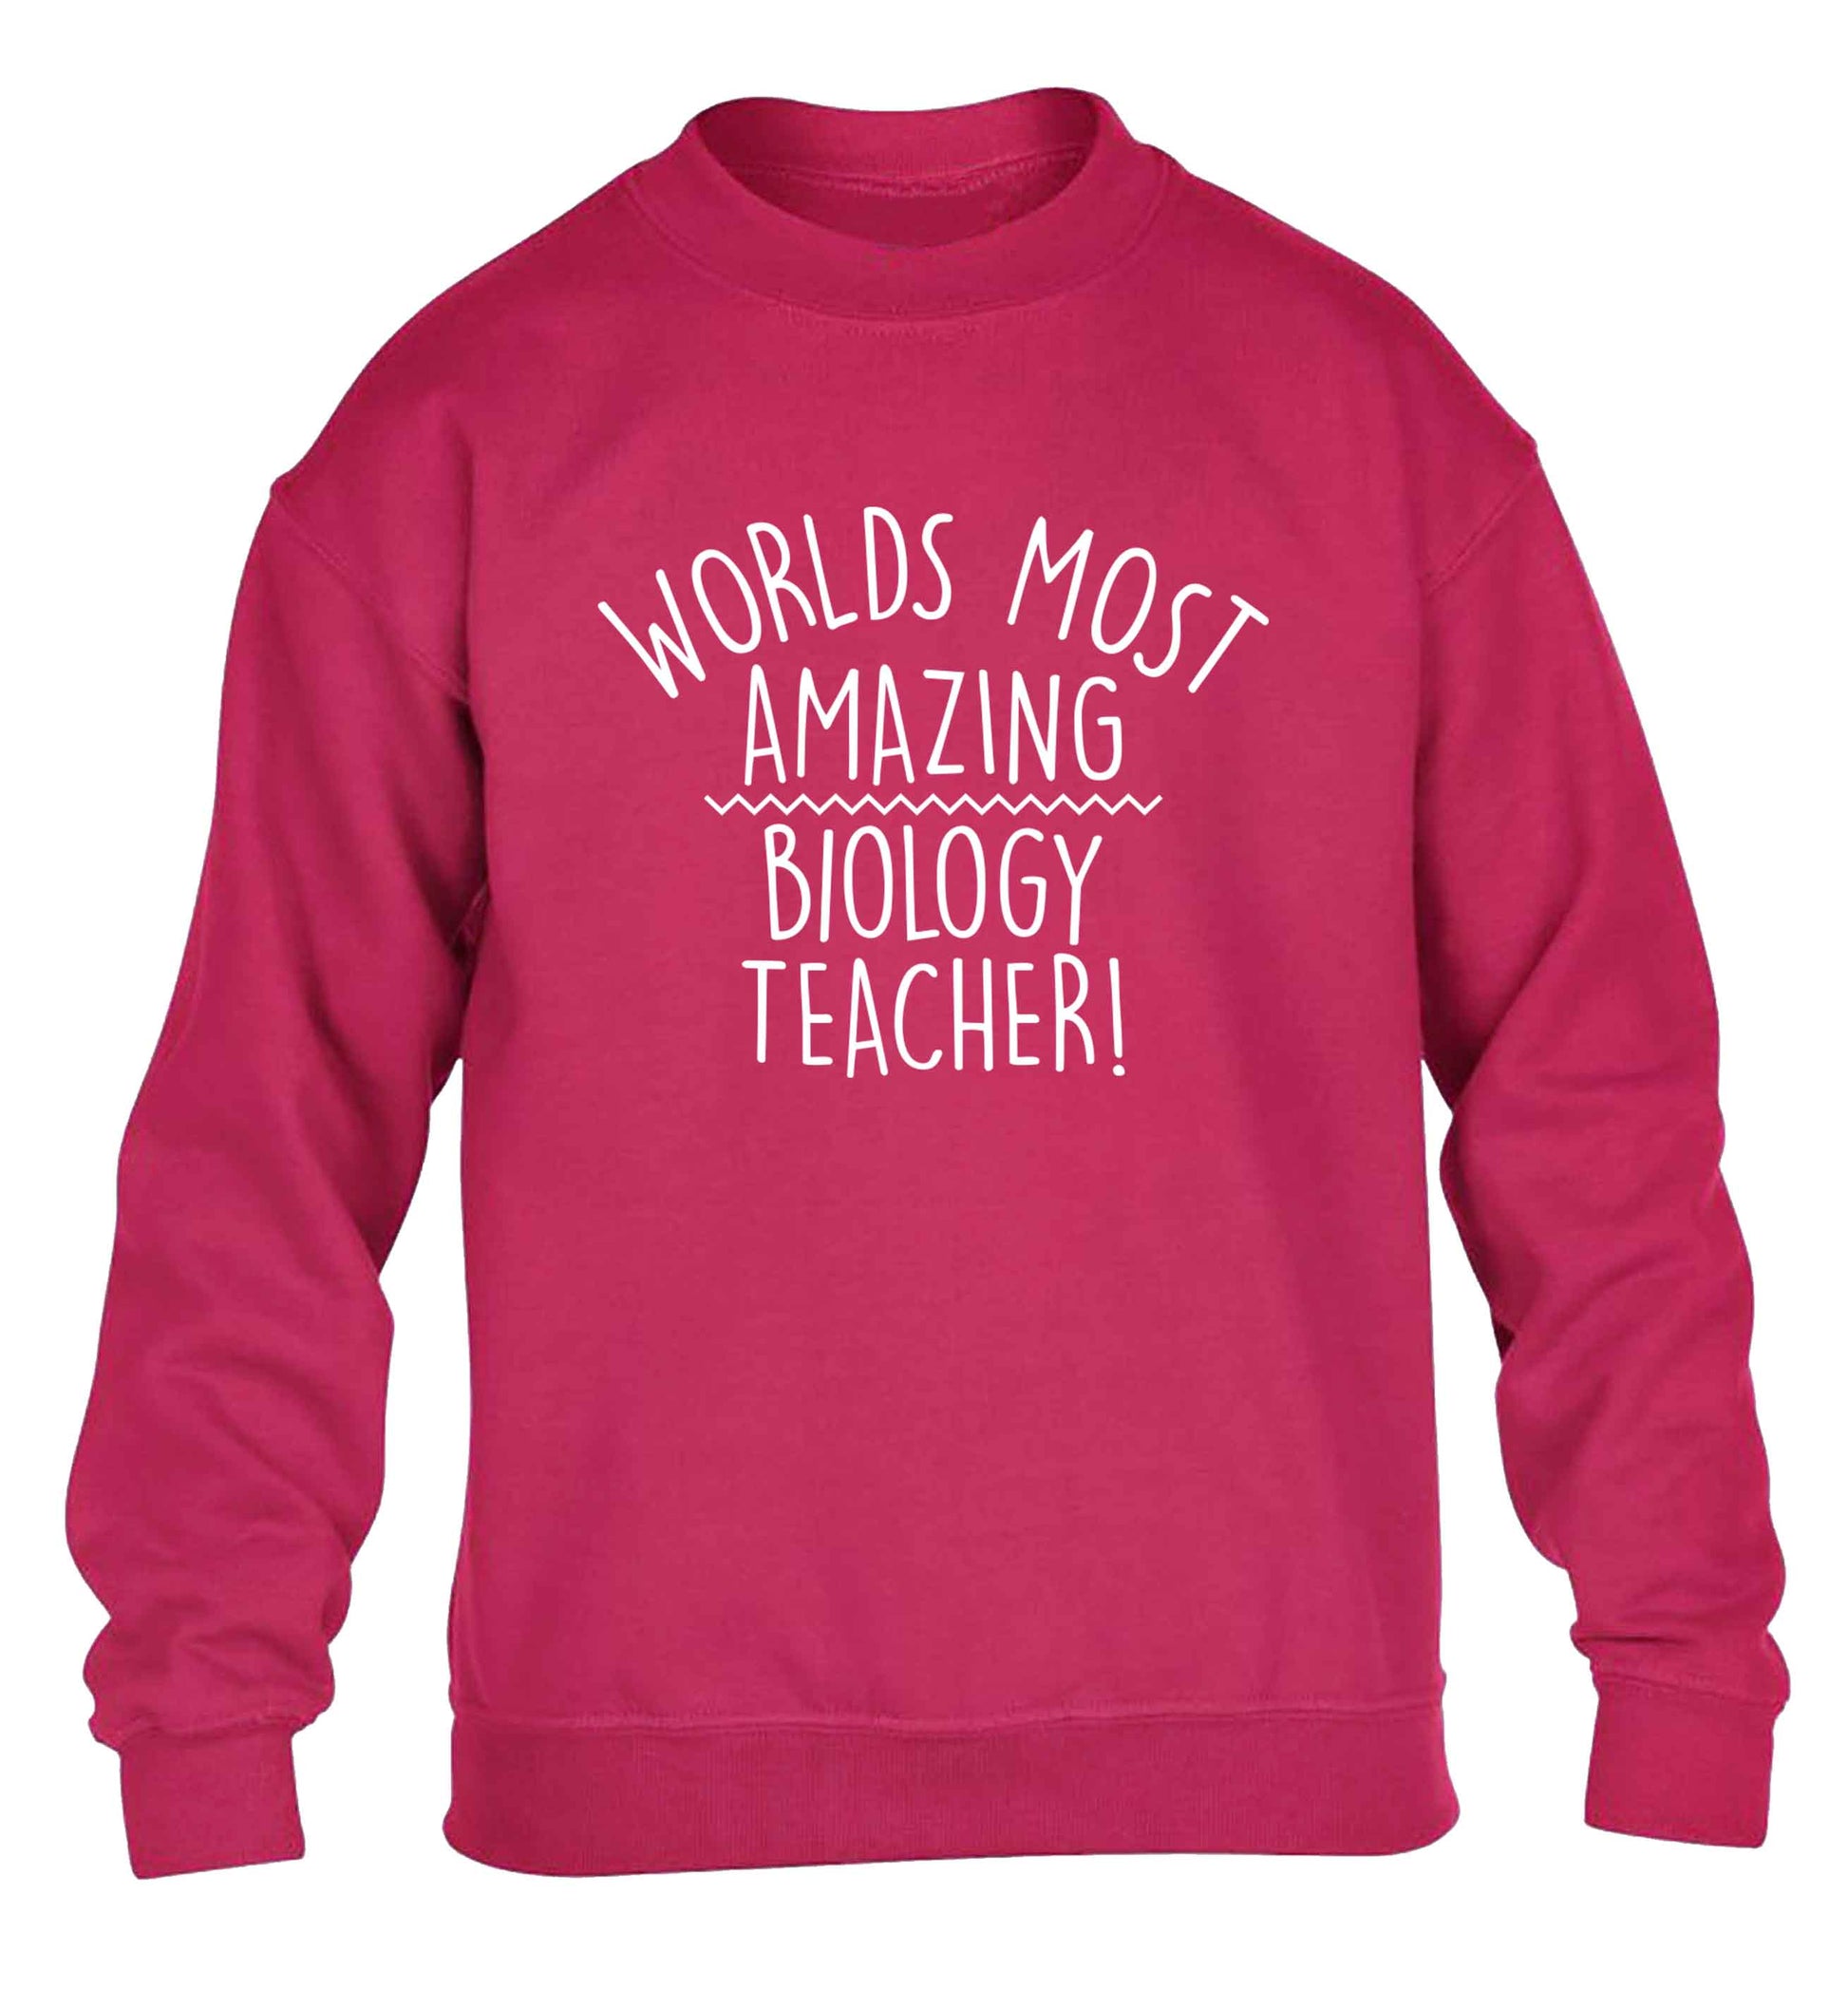 Worlds most amazing biology teacher children's pink sweater 12-13 Years